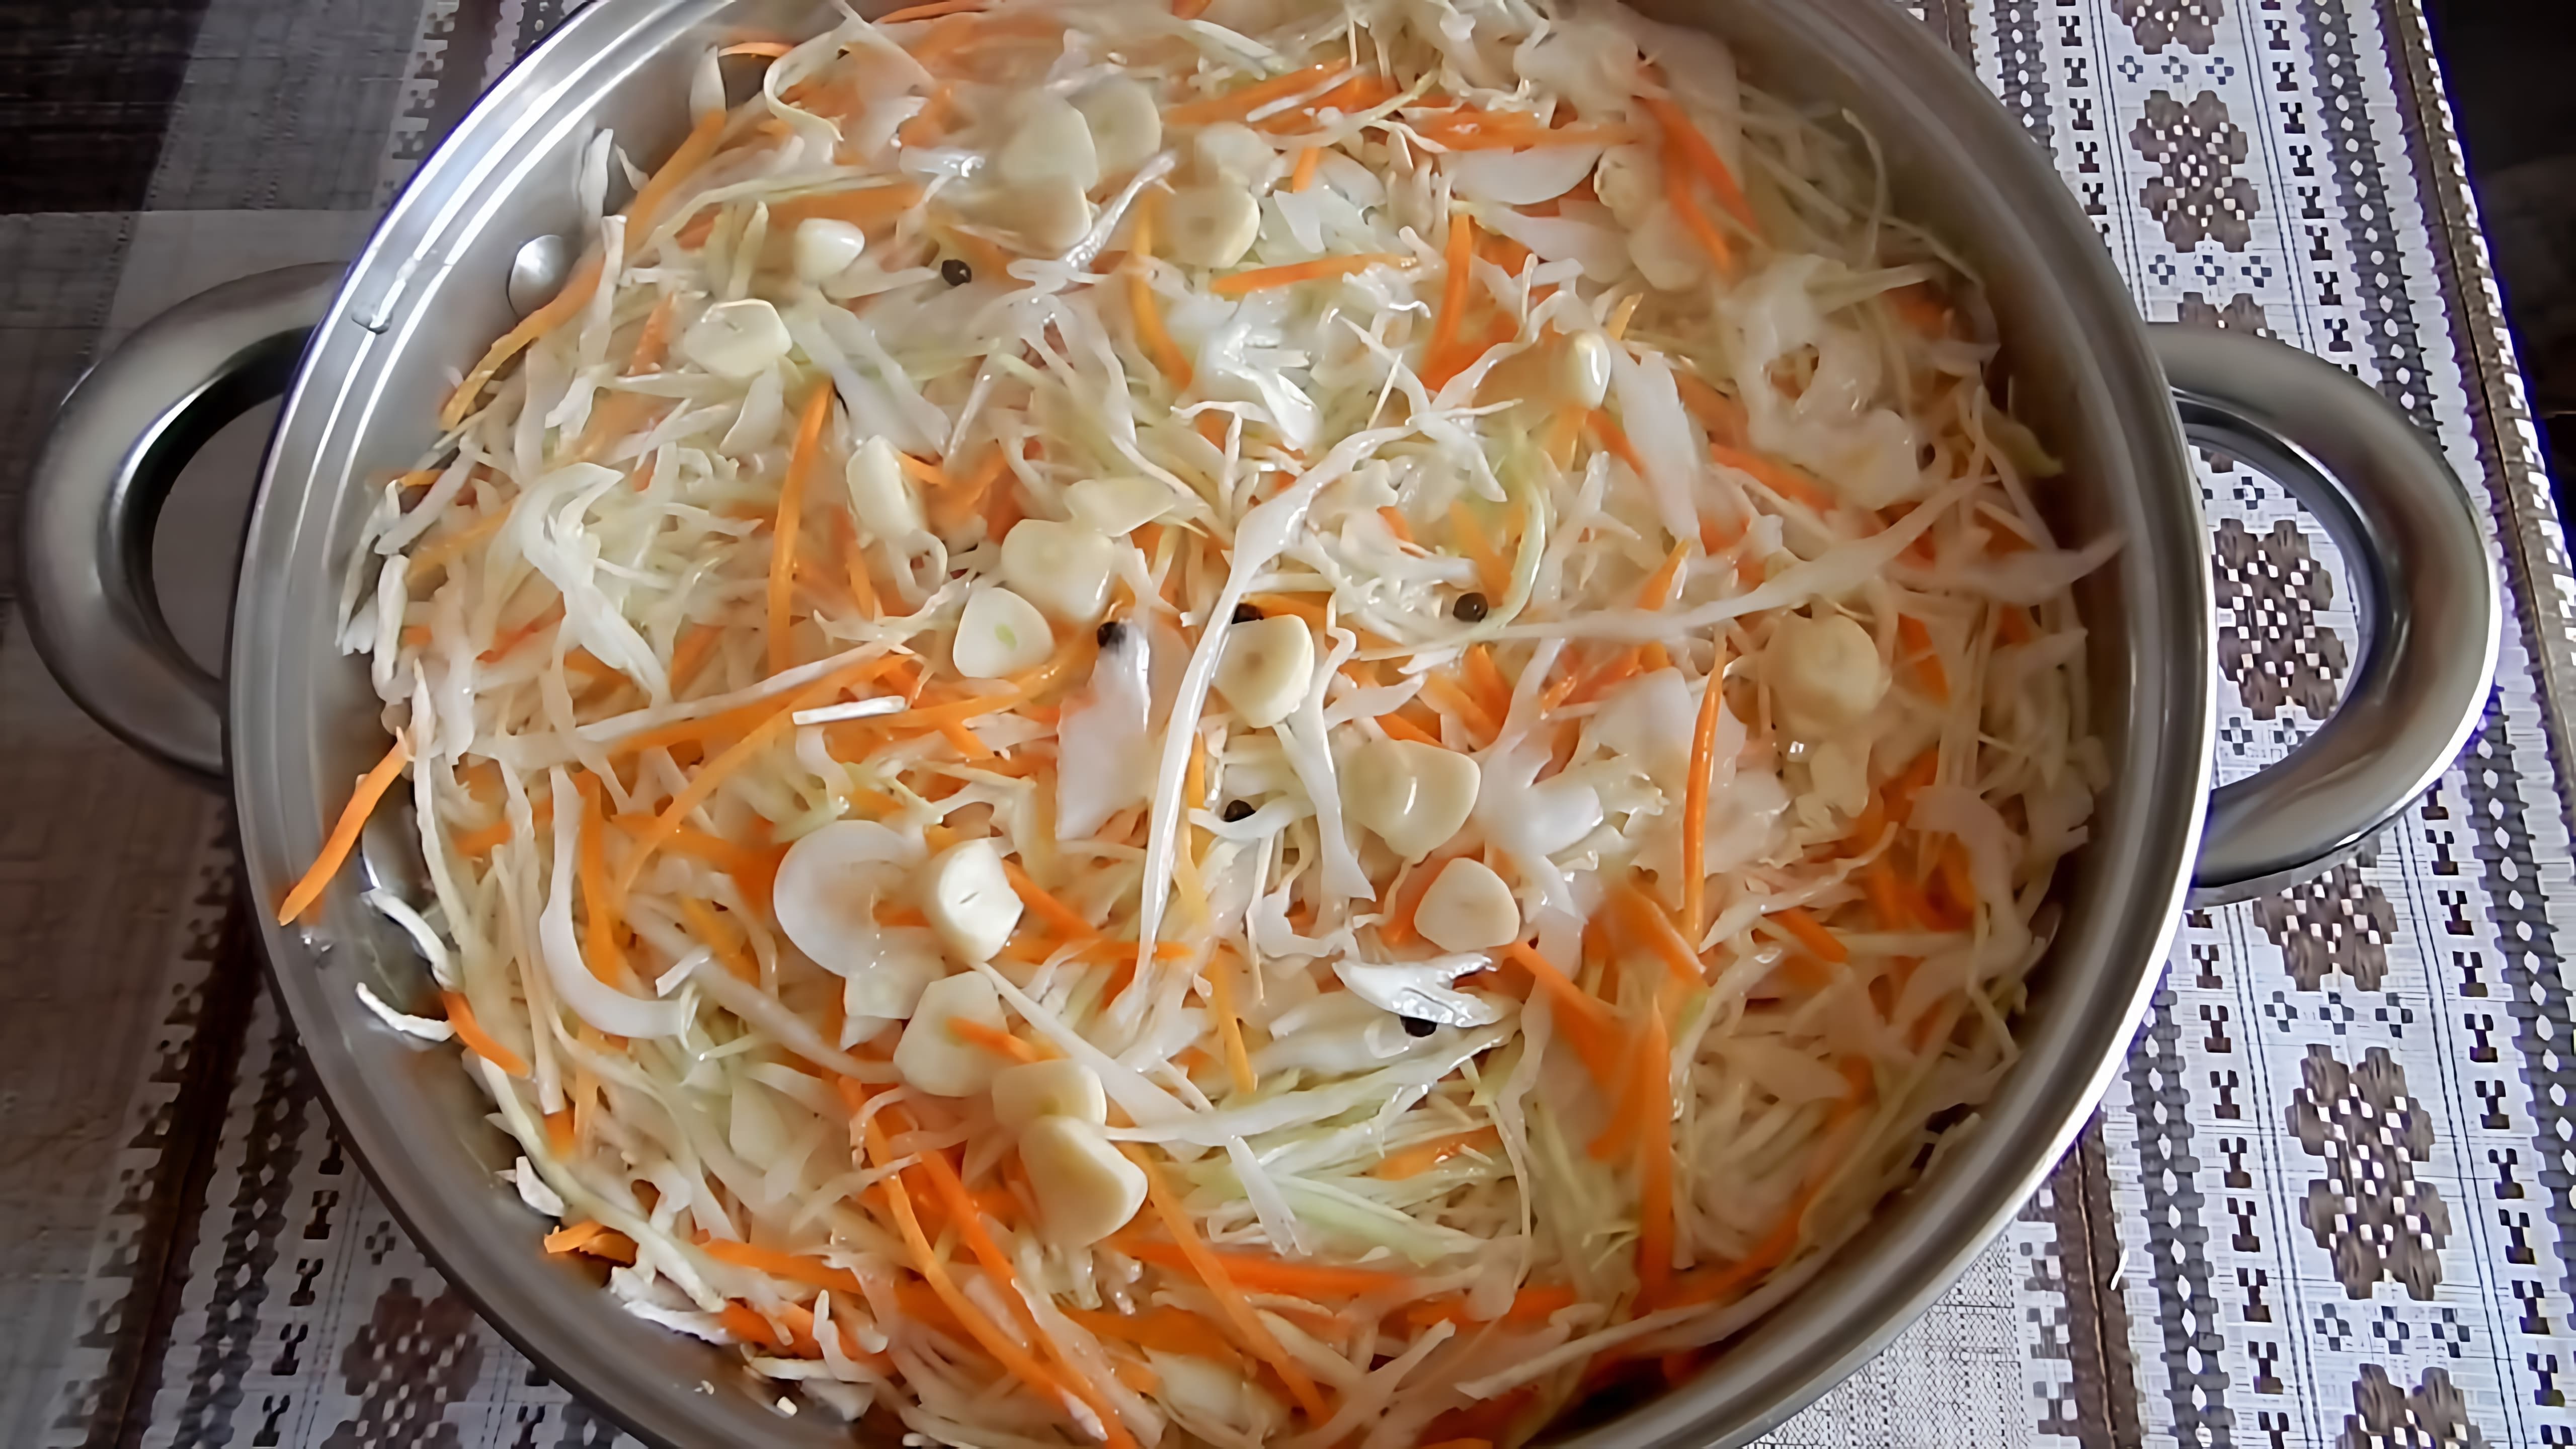 В этом видео демонстрируется процесс приготовления маринованной капусты быстрого приготовления